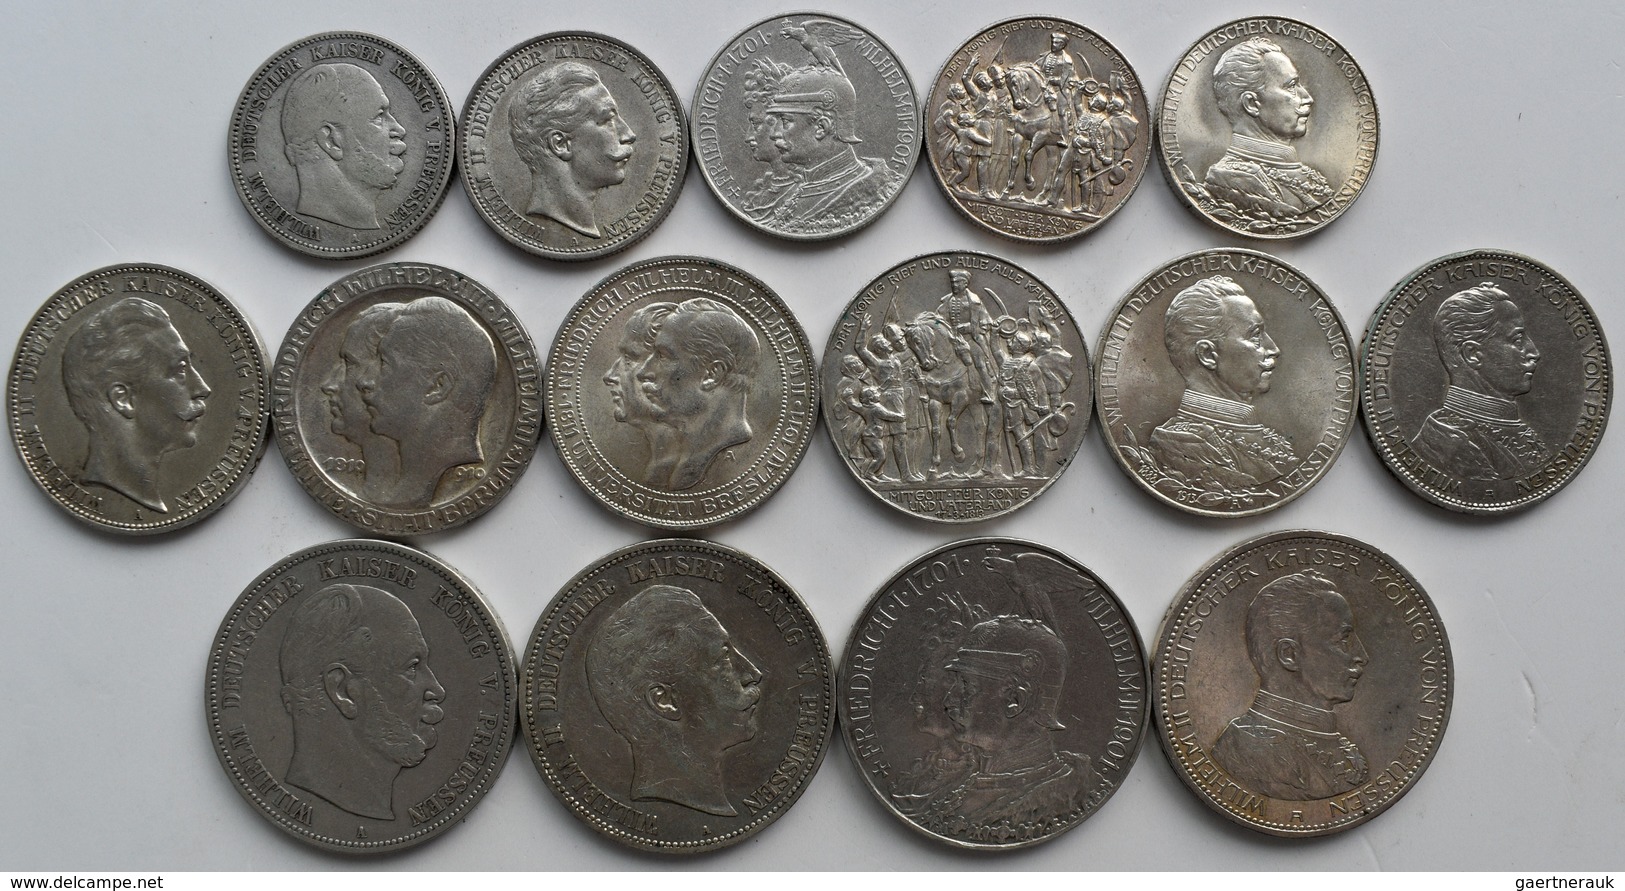 Preußen: Lot 15 Münzen, Dabei 5 X 2 Mark, 6 X 3 Mark Und 4 X 5 Mark Aus Preußen, Jede Münze Anders. - Taler & Doppeltaler